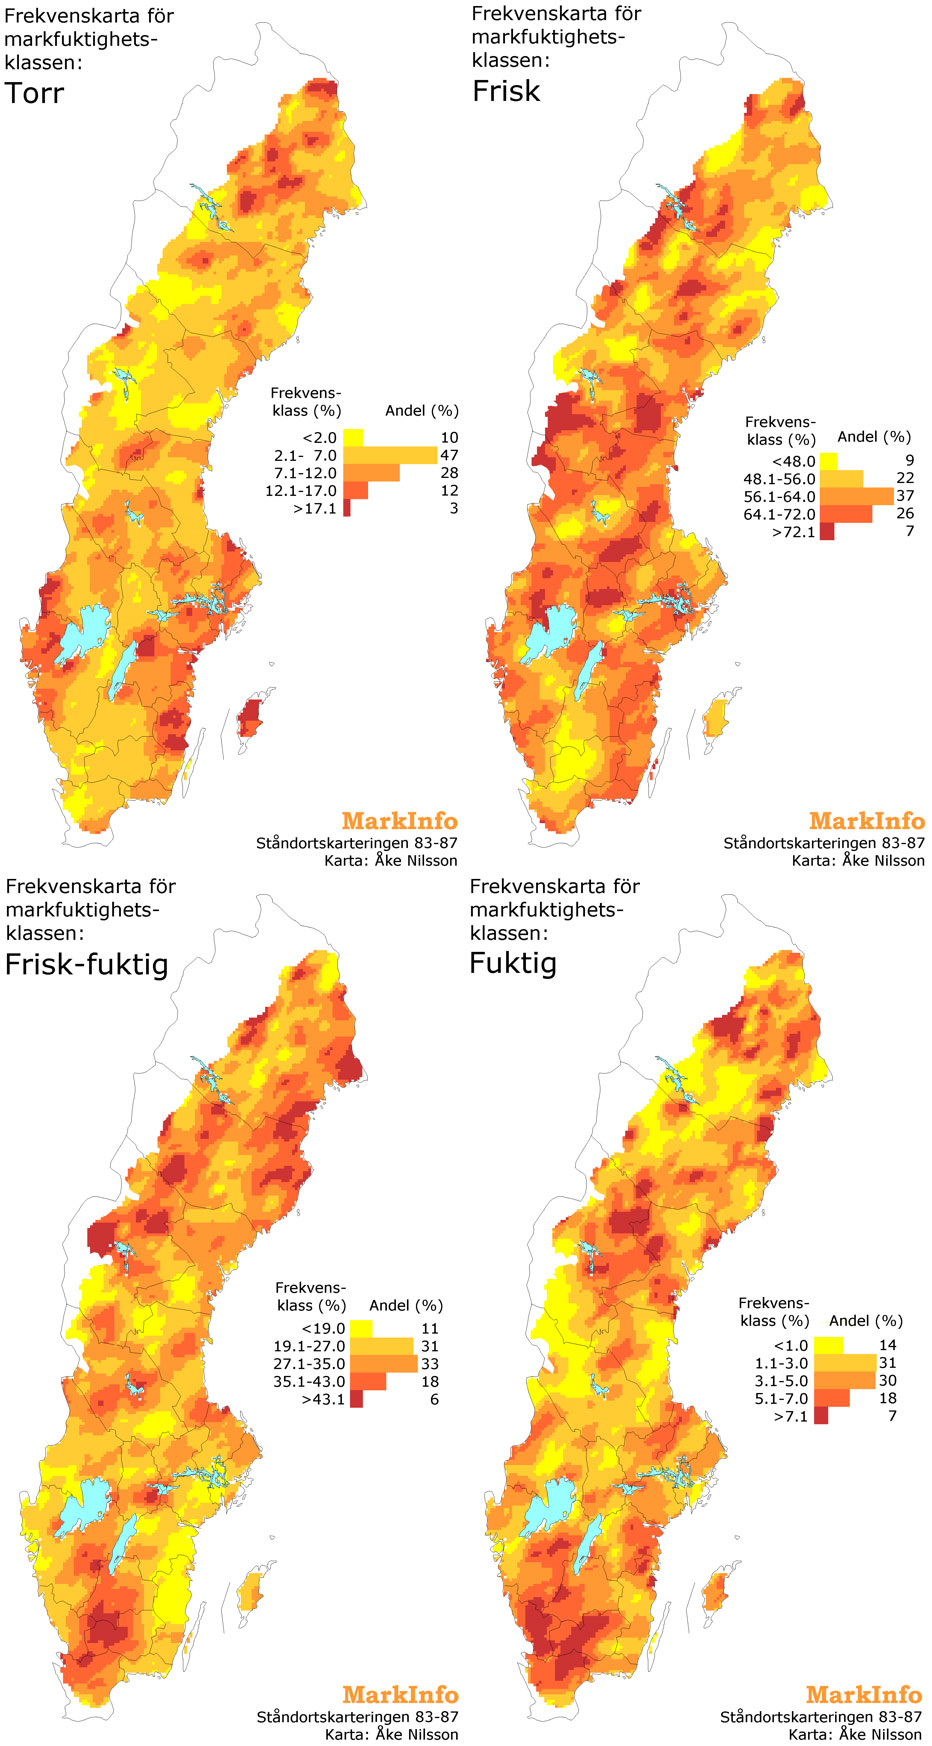 Fyra Sverigekartor med markeringar i olika färger, illustration.